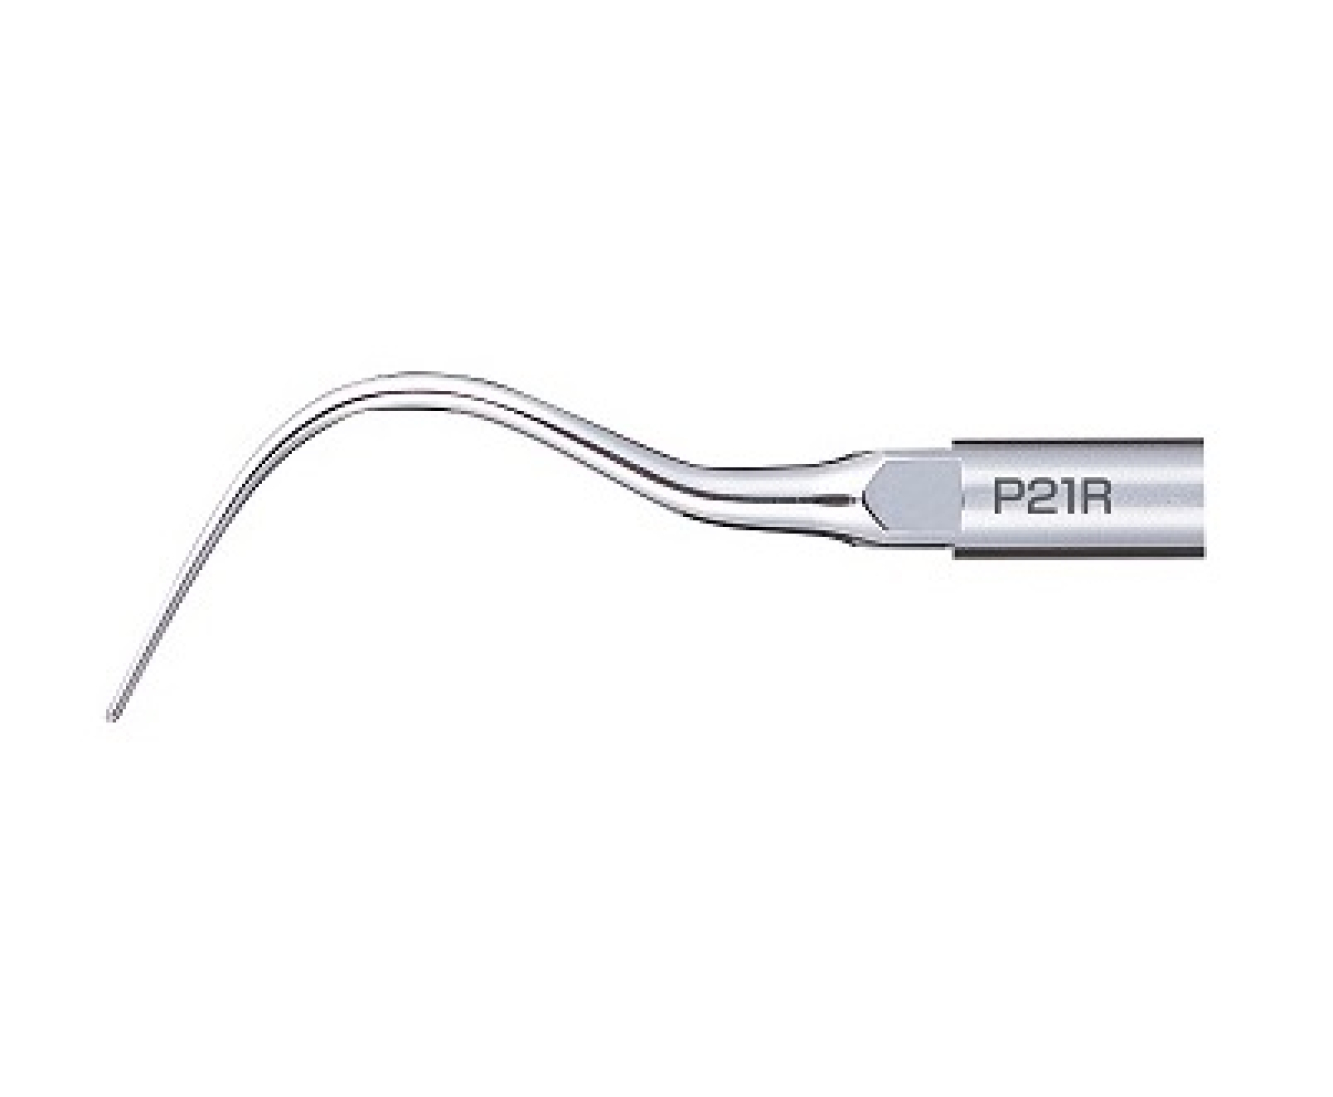 P21R Пародонтологическая, стоматологическая насадка к скалеру Varios, с правосторонним изгибом, NSK (Япония)